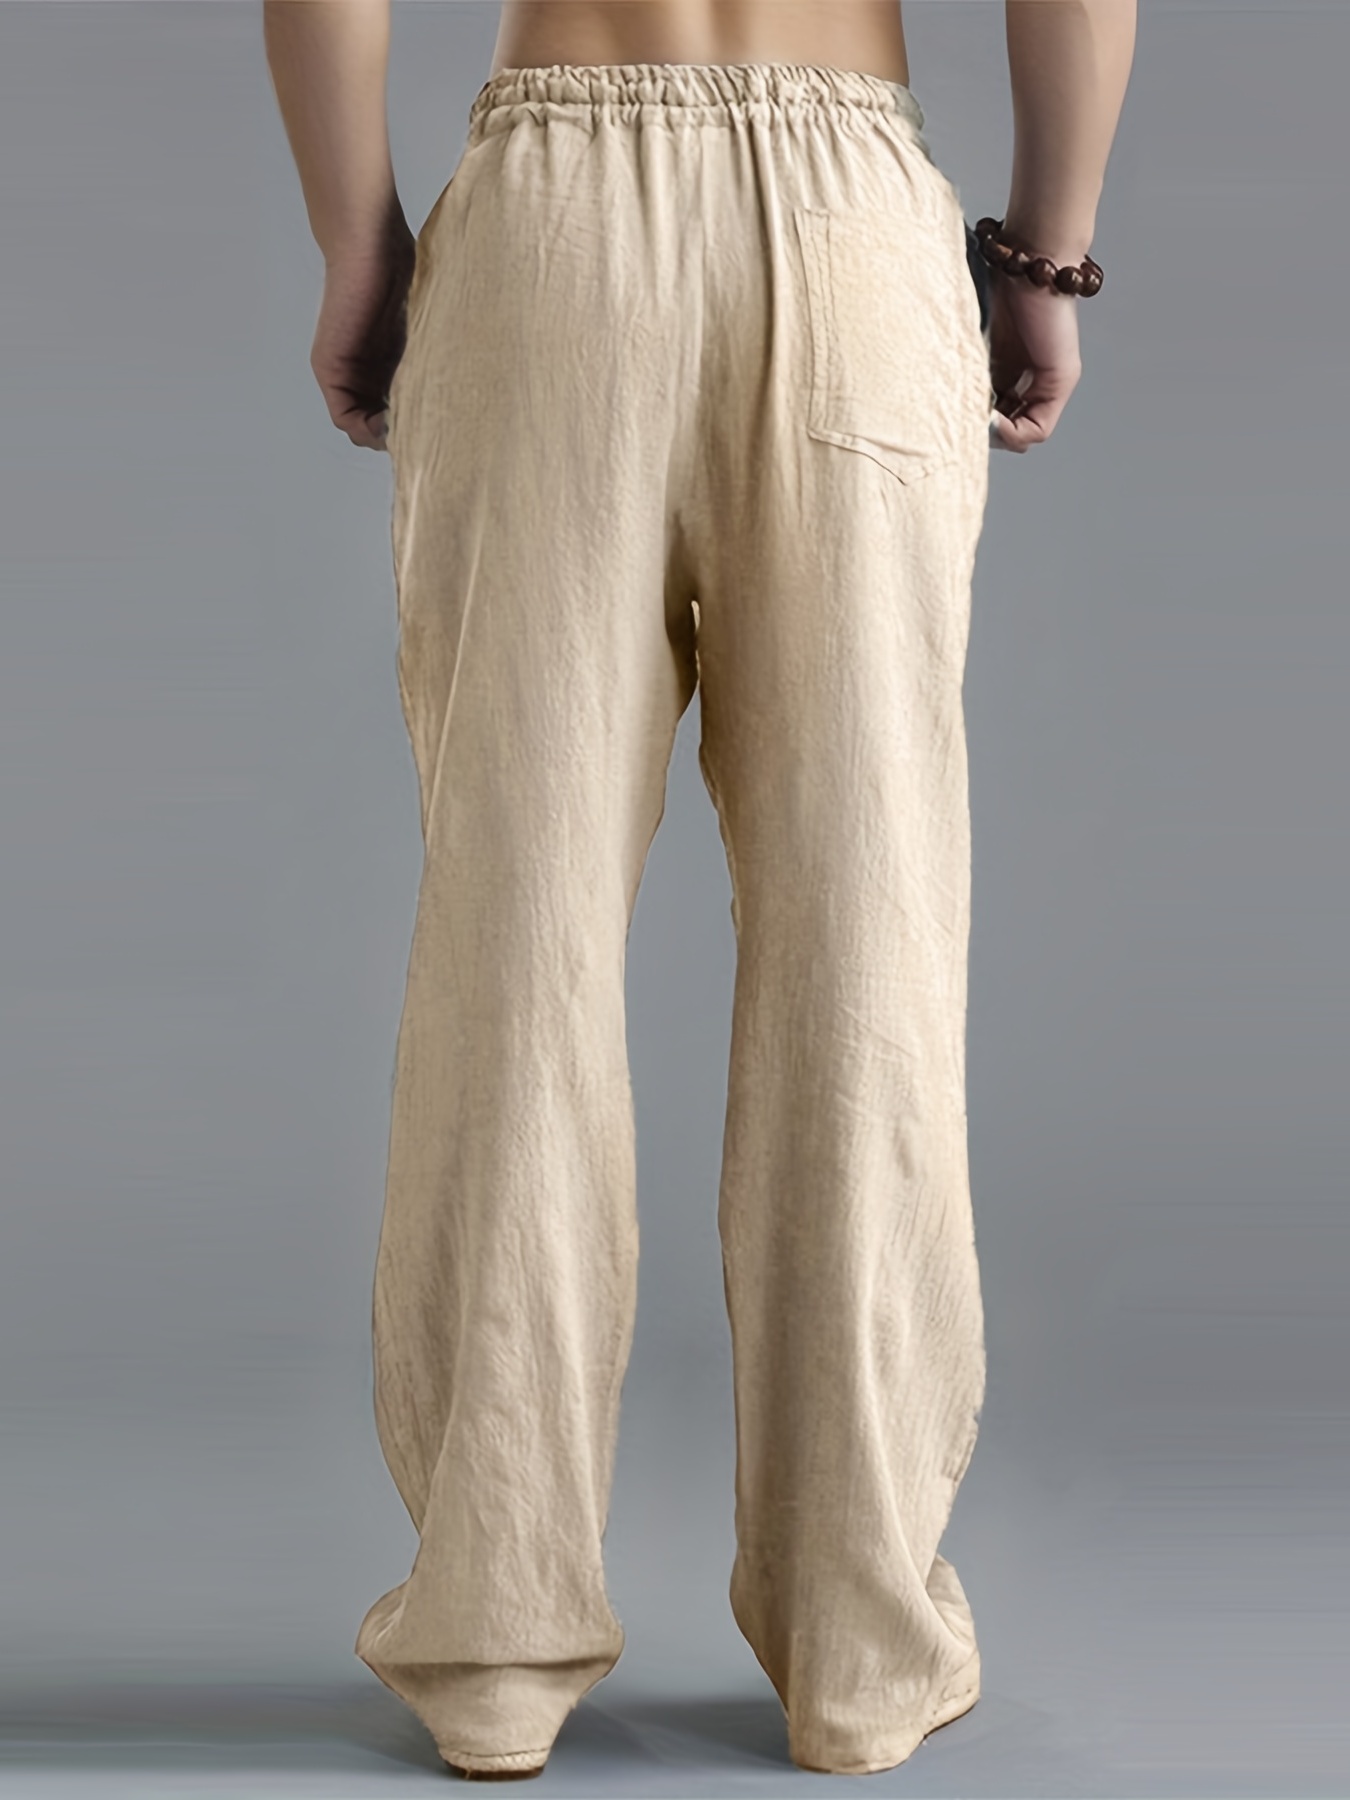 Comprar Pantalones Harem casuales de verano para hombre Pantalones jogger  de lino y algodón